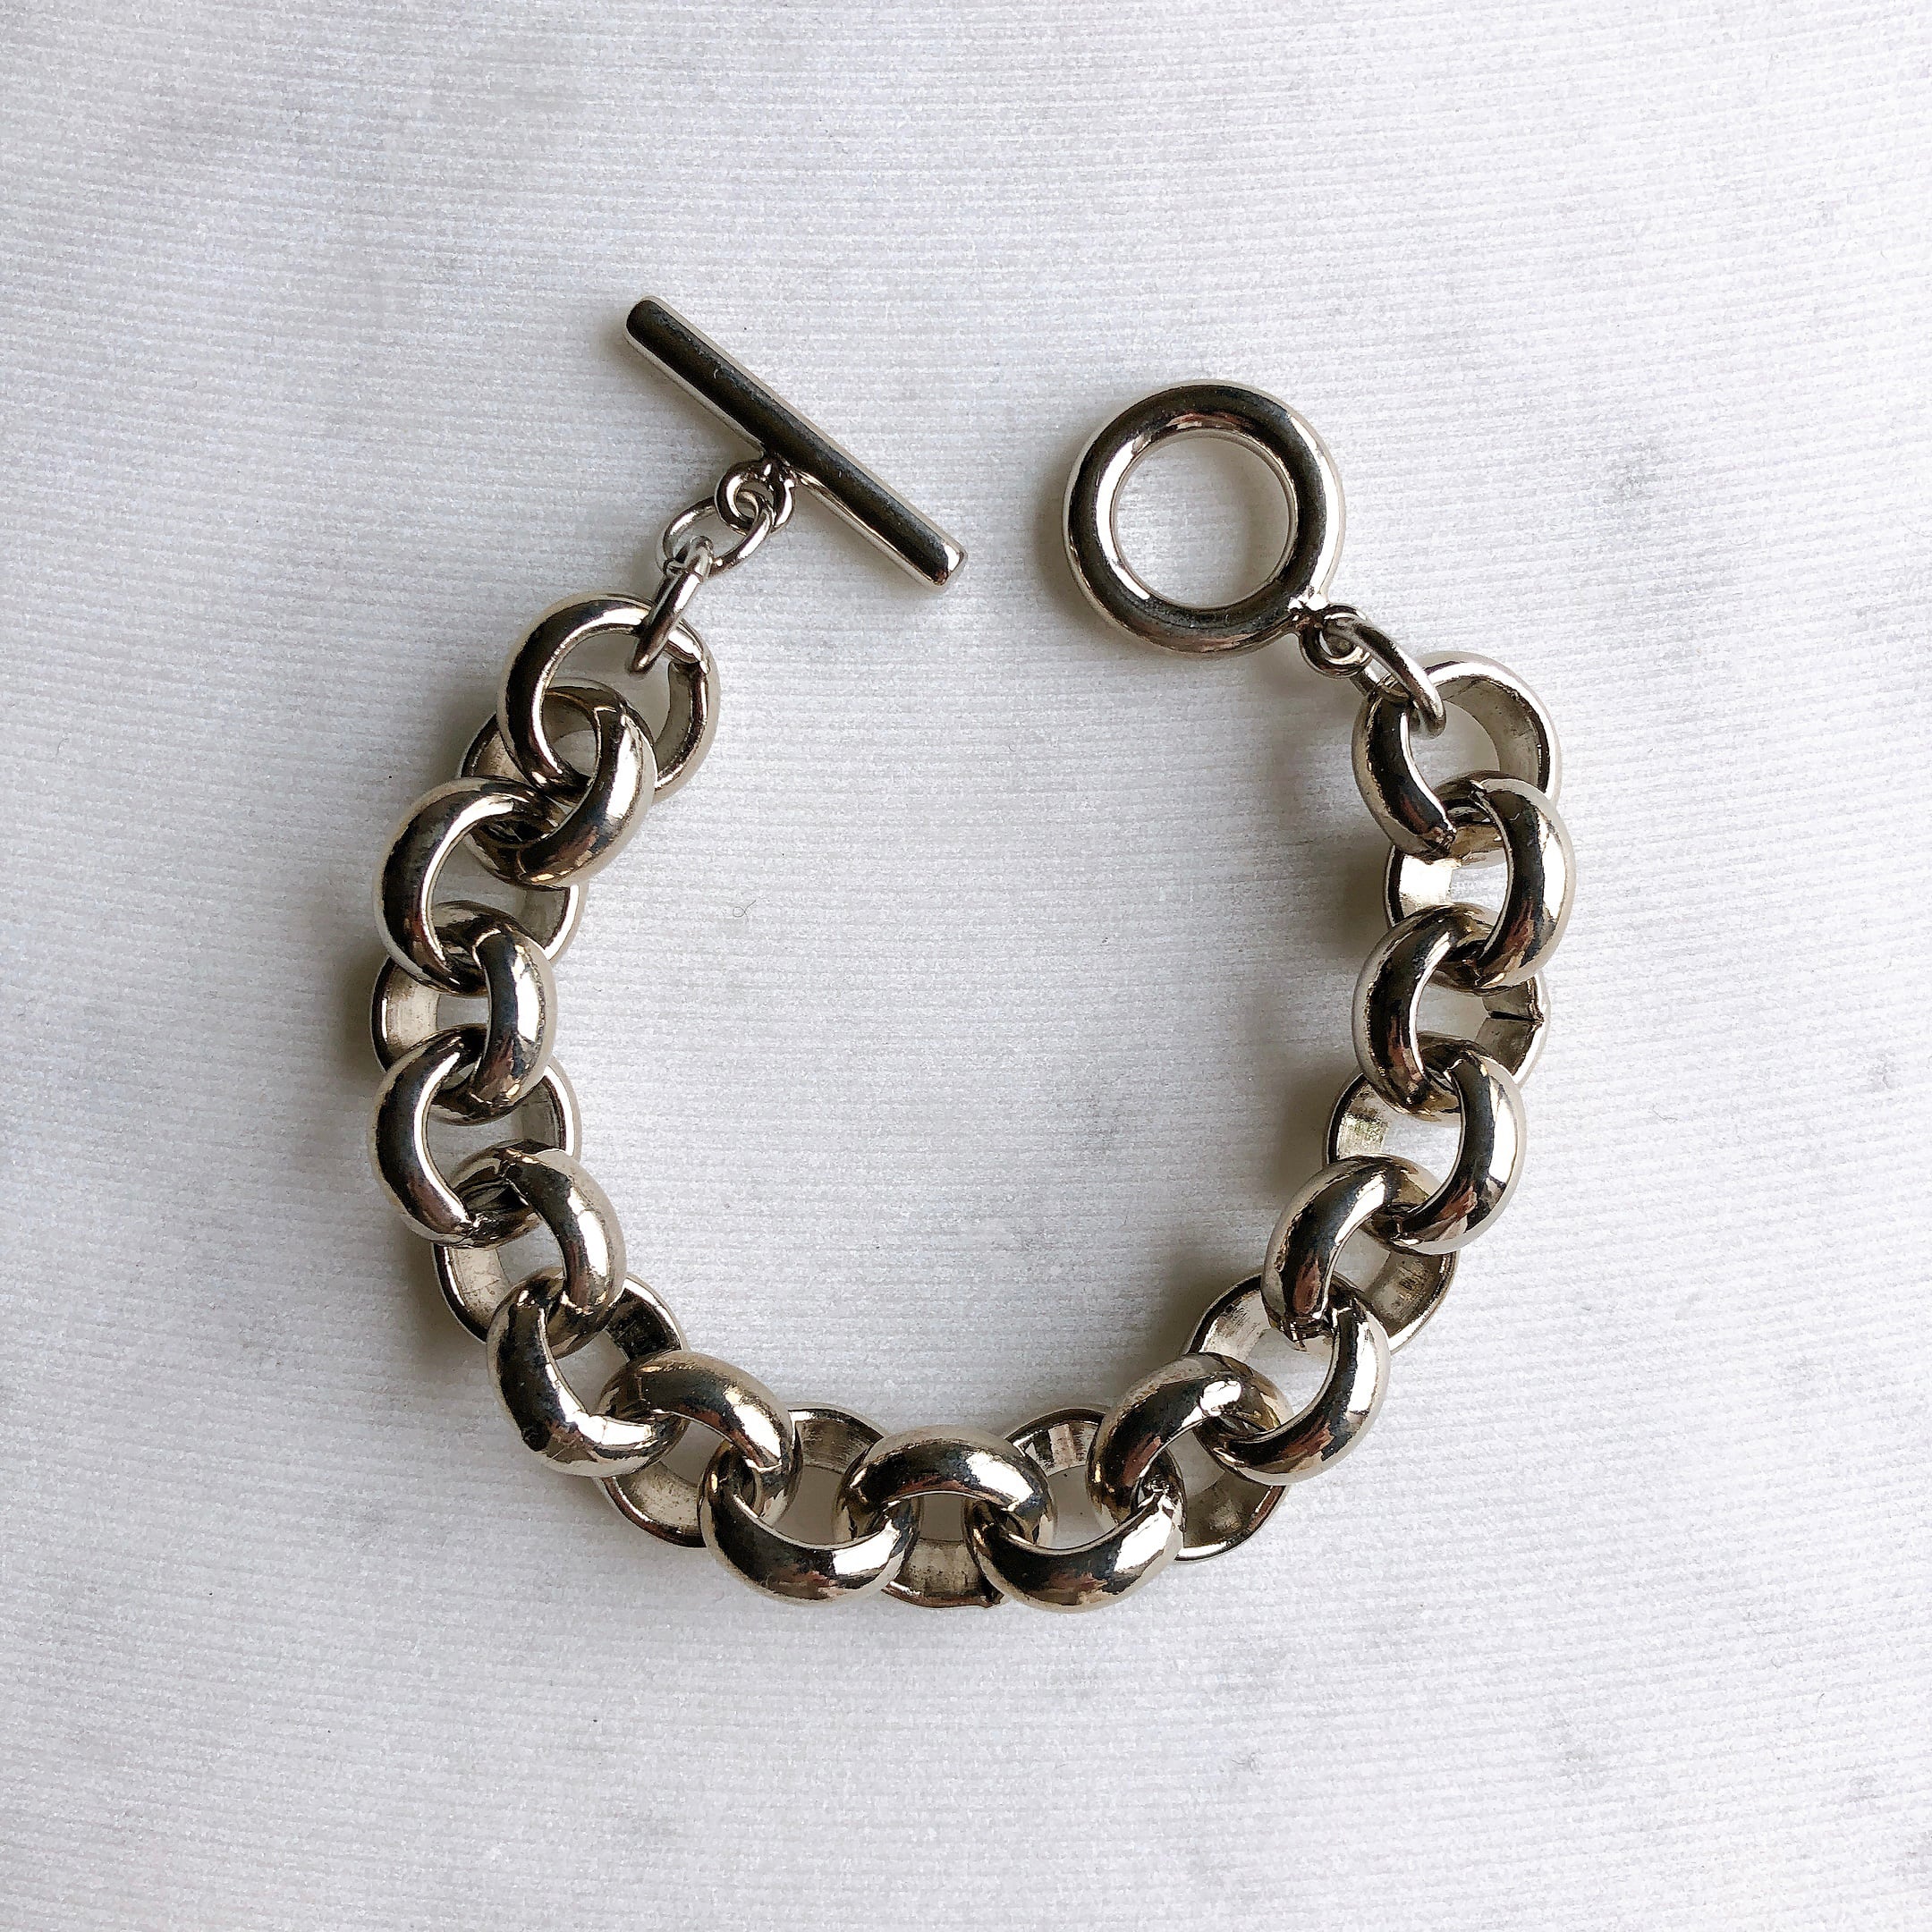 Ring Chain Bracelet リングチェーンブレスレット dix ONLINE STORE ディスのアクセサリーオンラインショップ